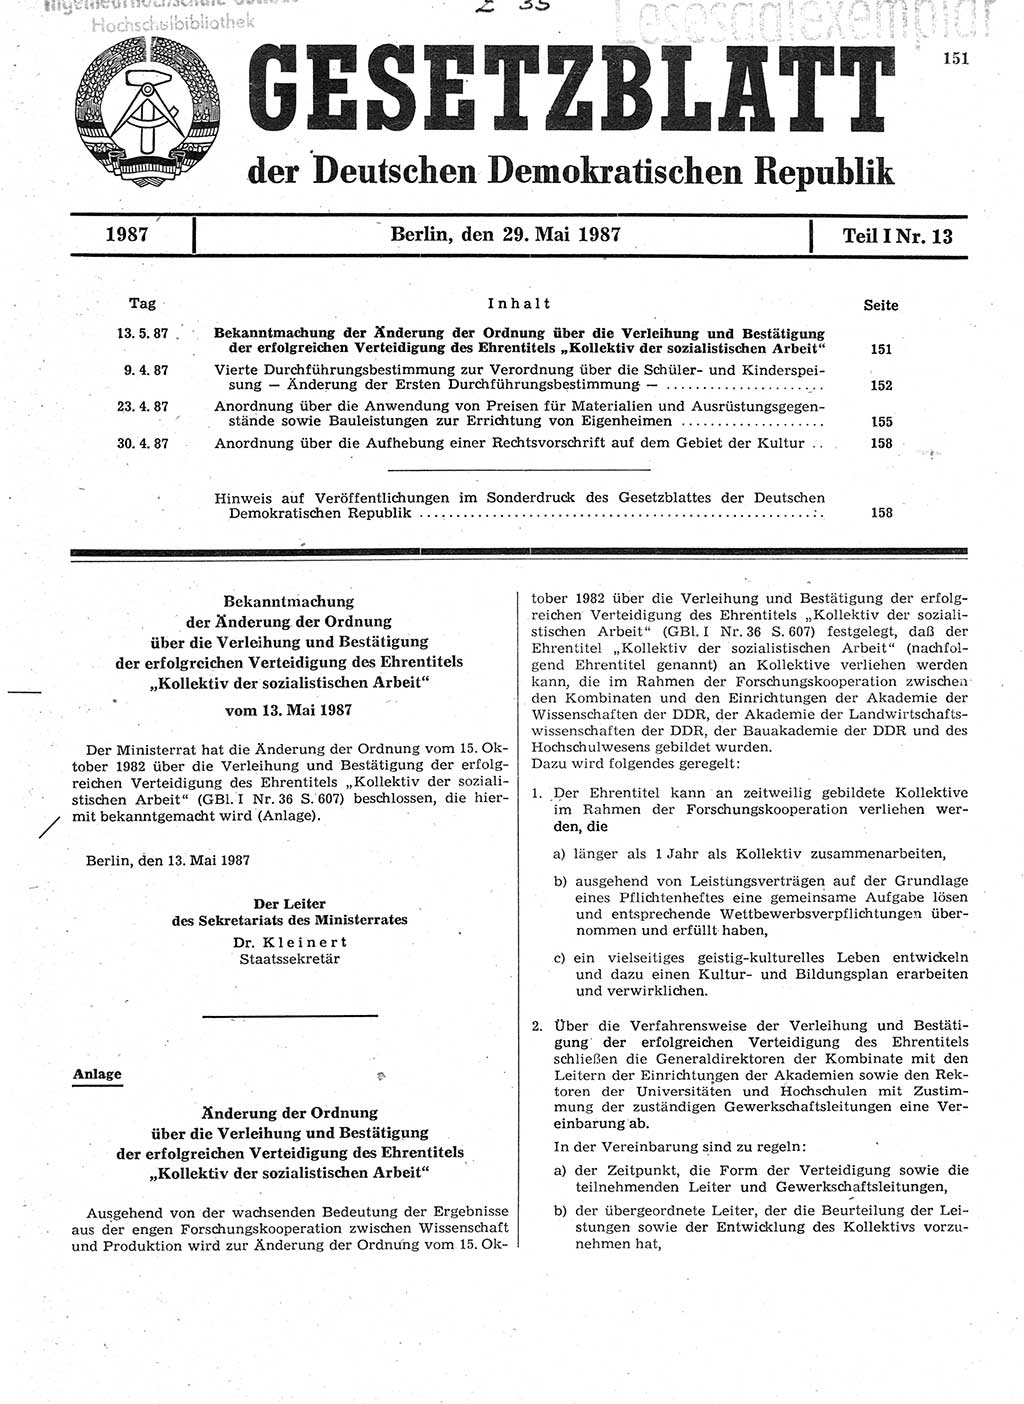 Gesetzblatt (GBl.) der Deutschen Demokratischen Republik (DDR) Teil Ⅰ 1987, Seite 151 (GBl. DDR Ⅰ 1987, S. 151)